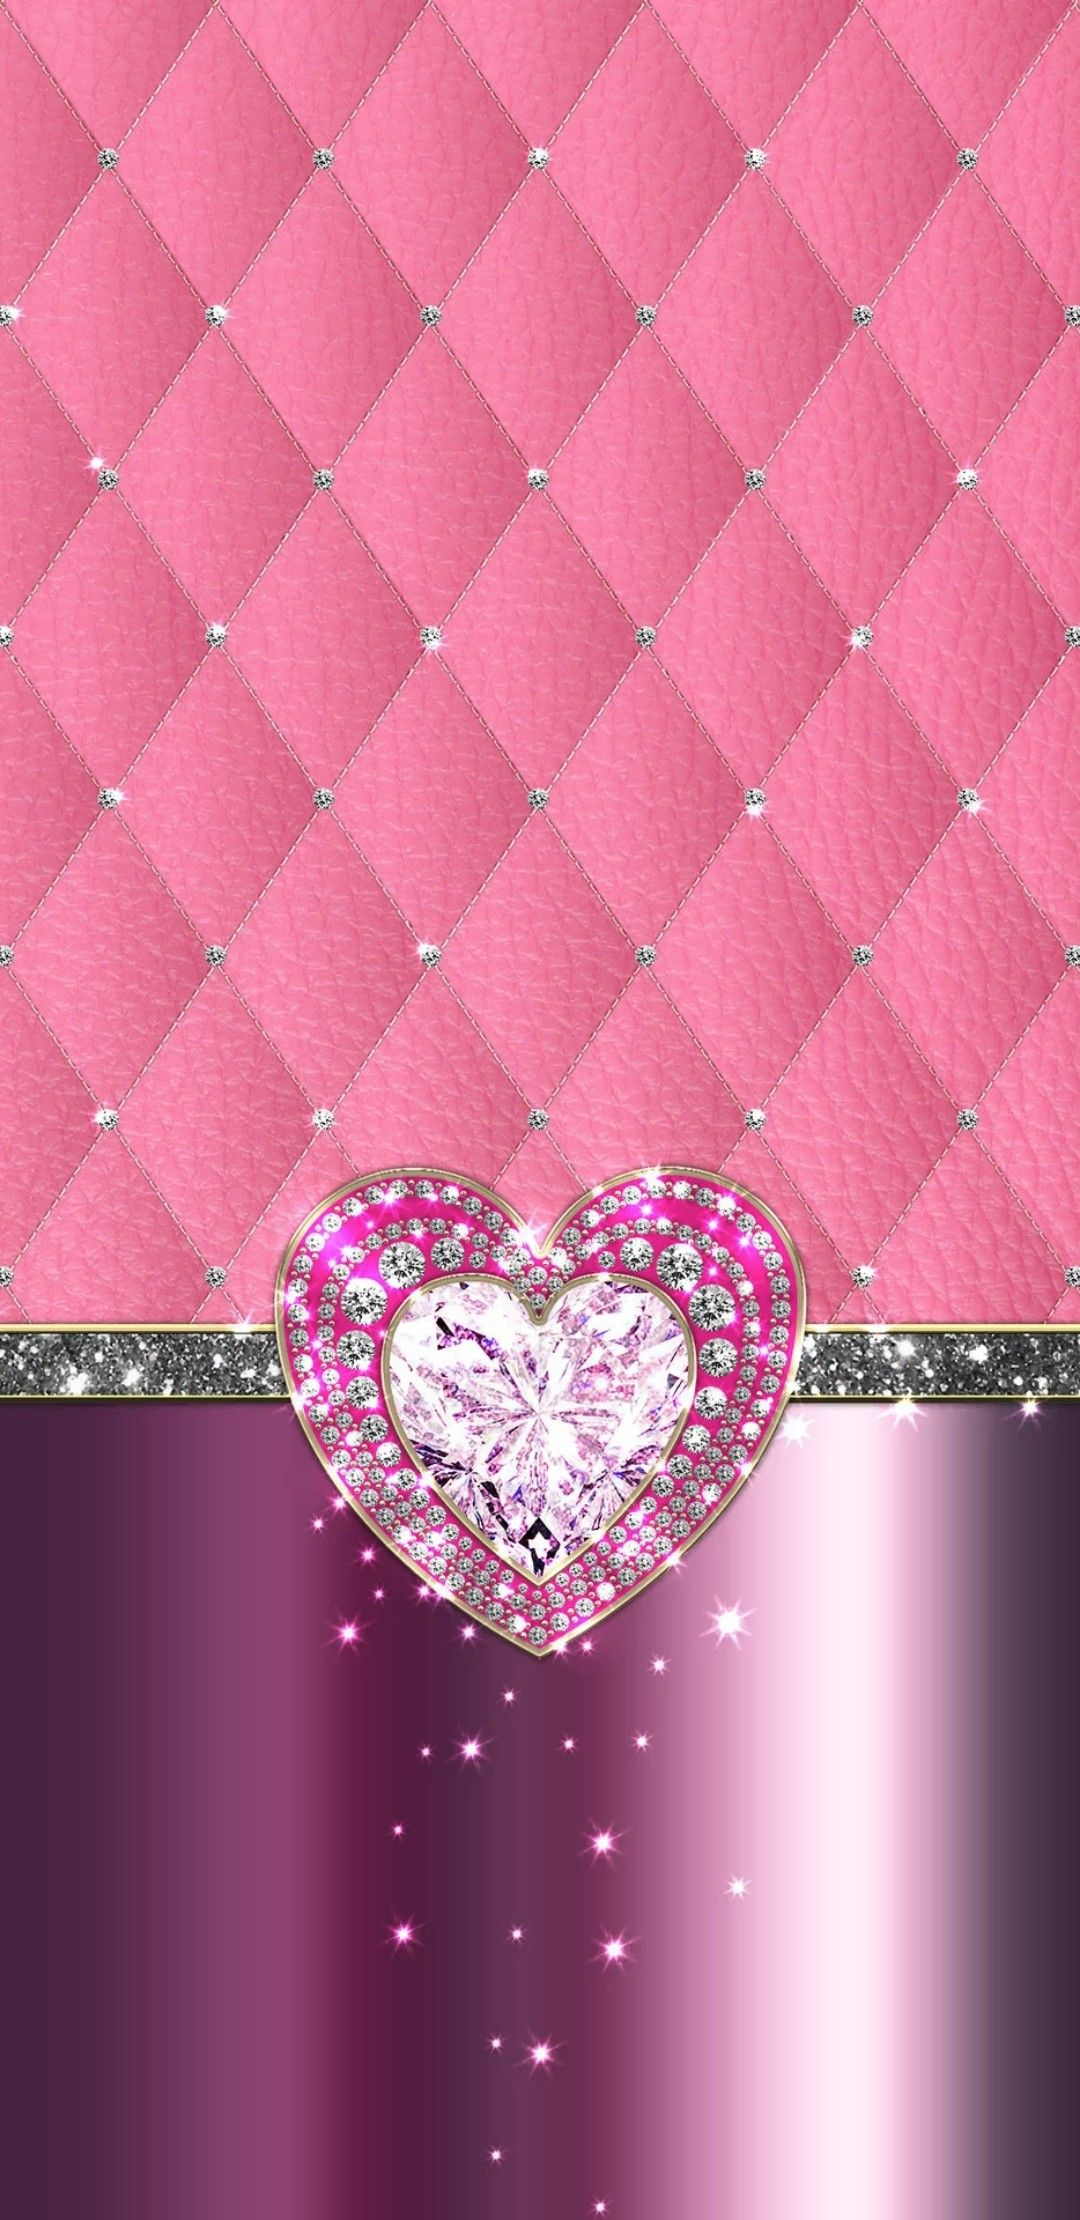 1080x2220 Artist | Pink diamond wallpaper, Bling wallpaper, Heart wallpaper